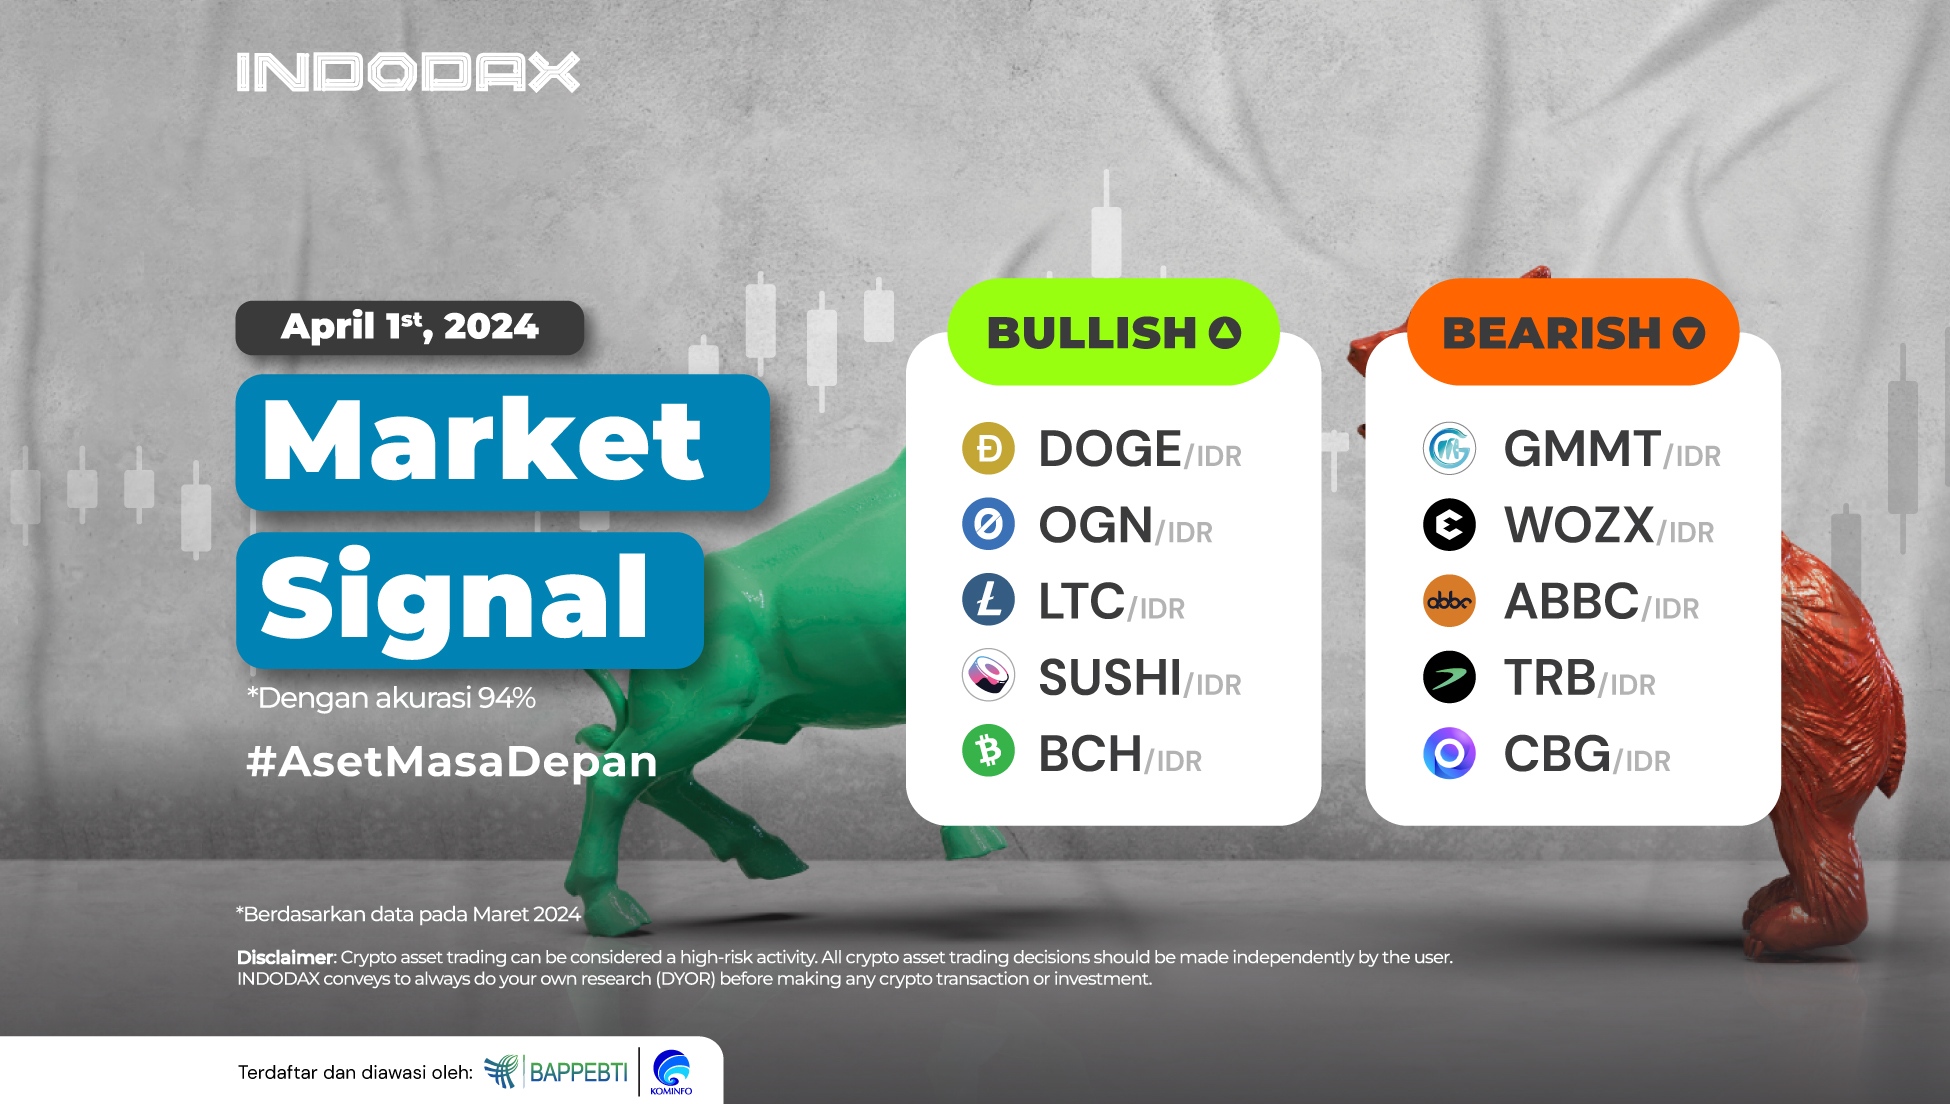 Laut INDODAX-Marktsignalen ist Dogecoin im April auf dem Kryptomarkt bullisch